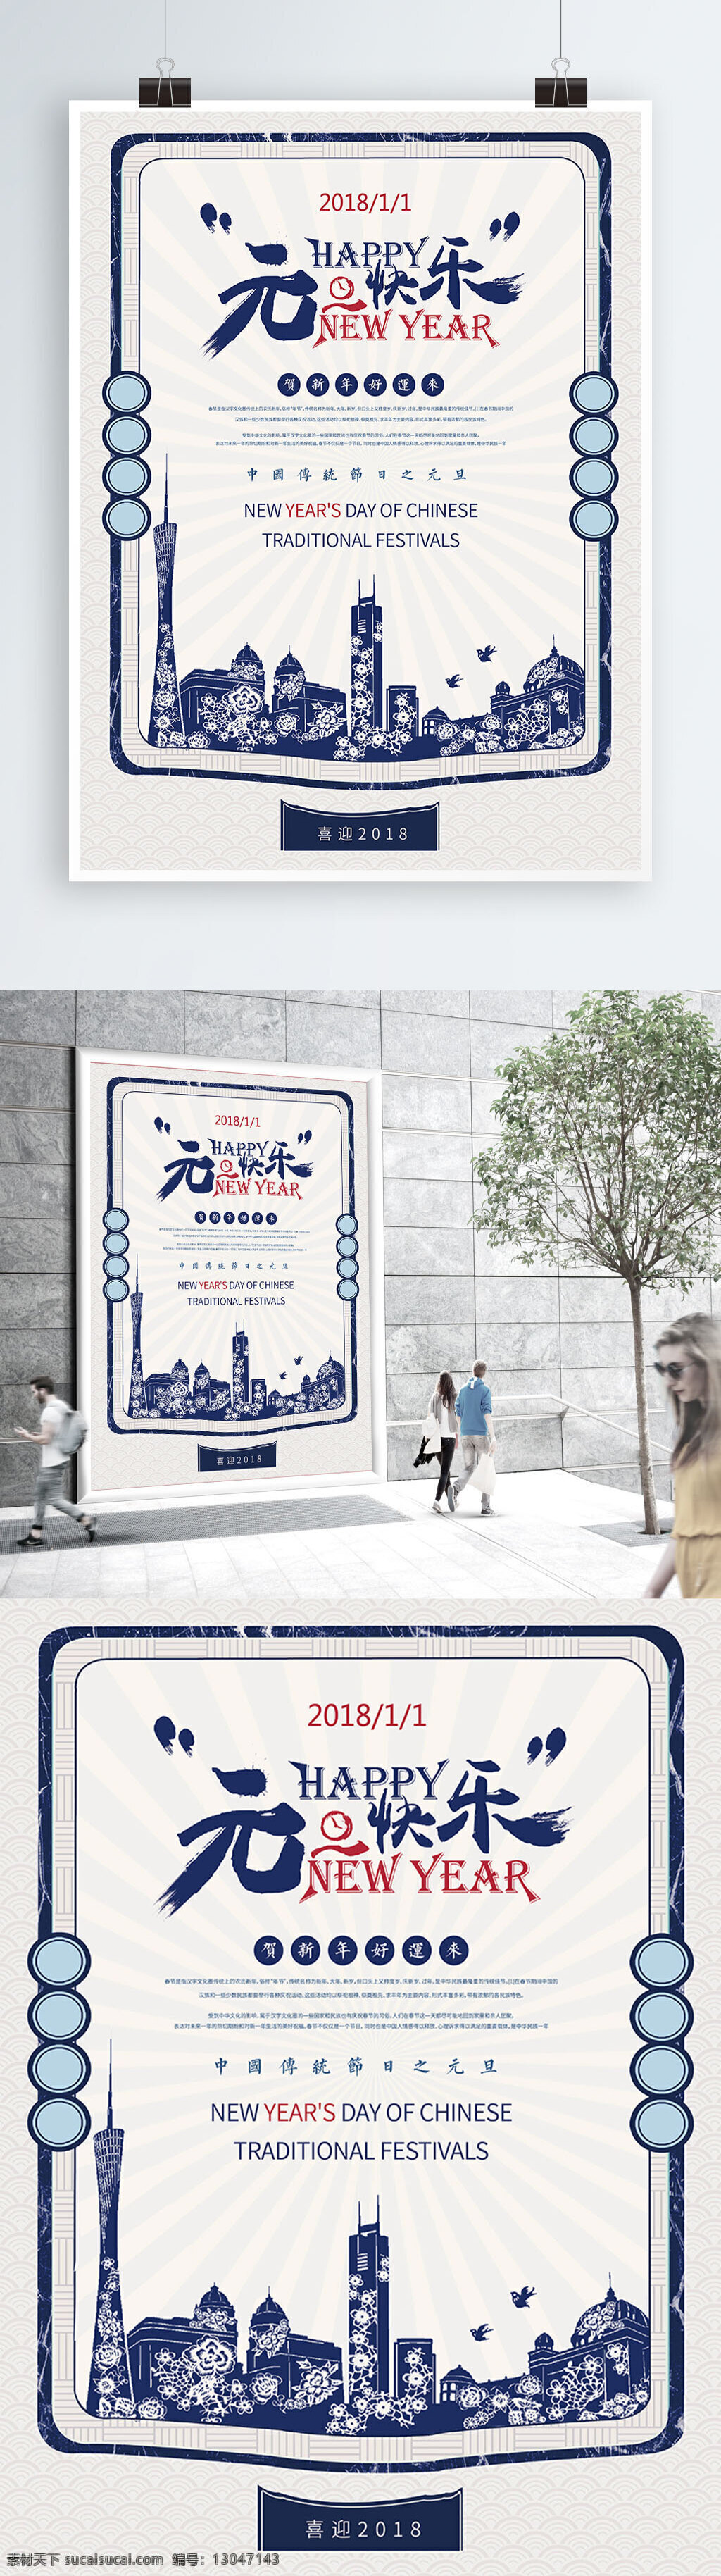 复古 简洁 中国 传统节日 元旦 宣传海报 中国传统节日 2018年